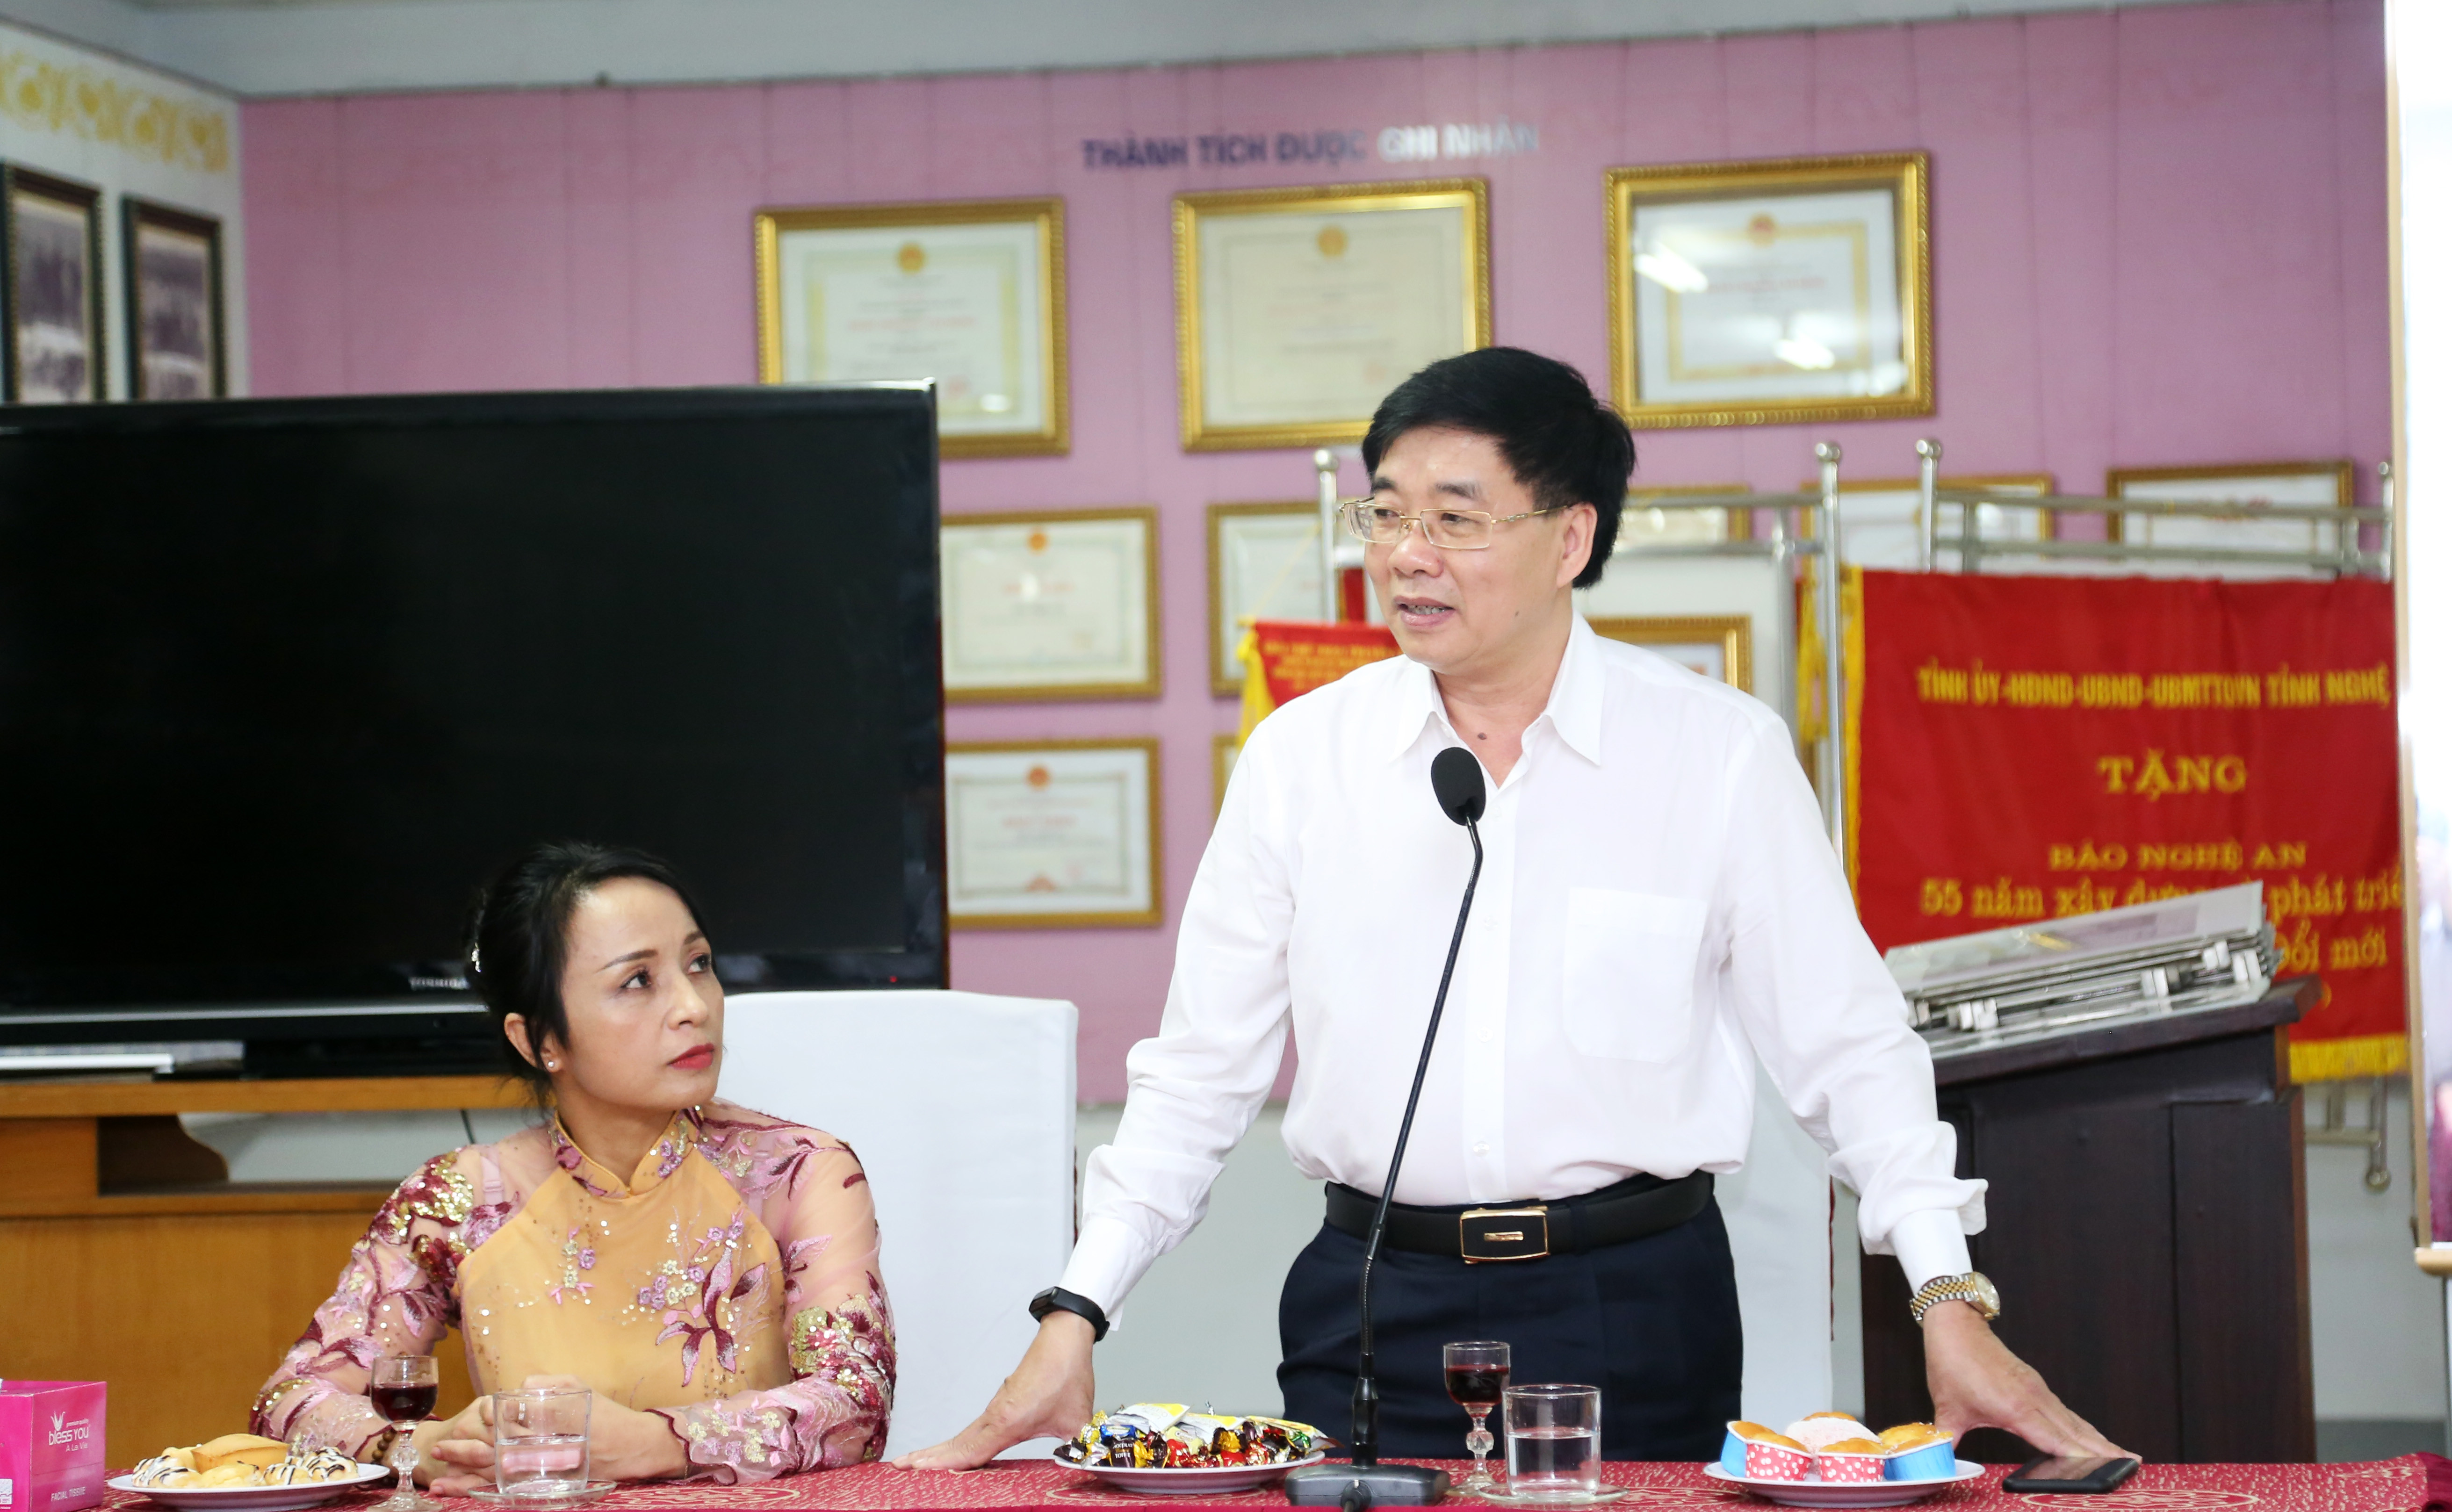 Trò chuyện với cán bộ, phóng viên, nhân viên Báo Nghệ An, đồng chí Nguyễn Văn Thông mong muốn đơn vị tiếp tục giữ vững lá cờ đầu trong lĩnh vực thông tin tuyên truyền, không ngừng đổi mới 